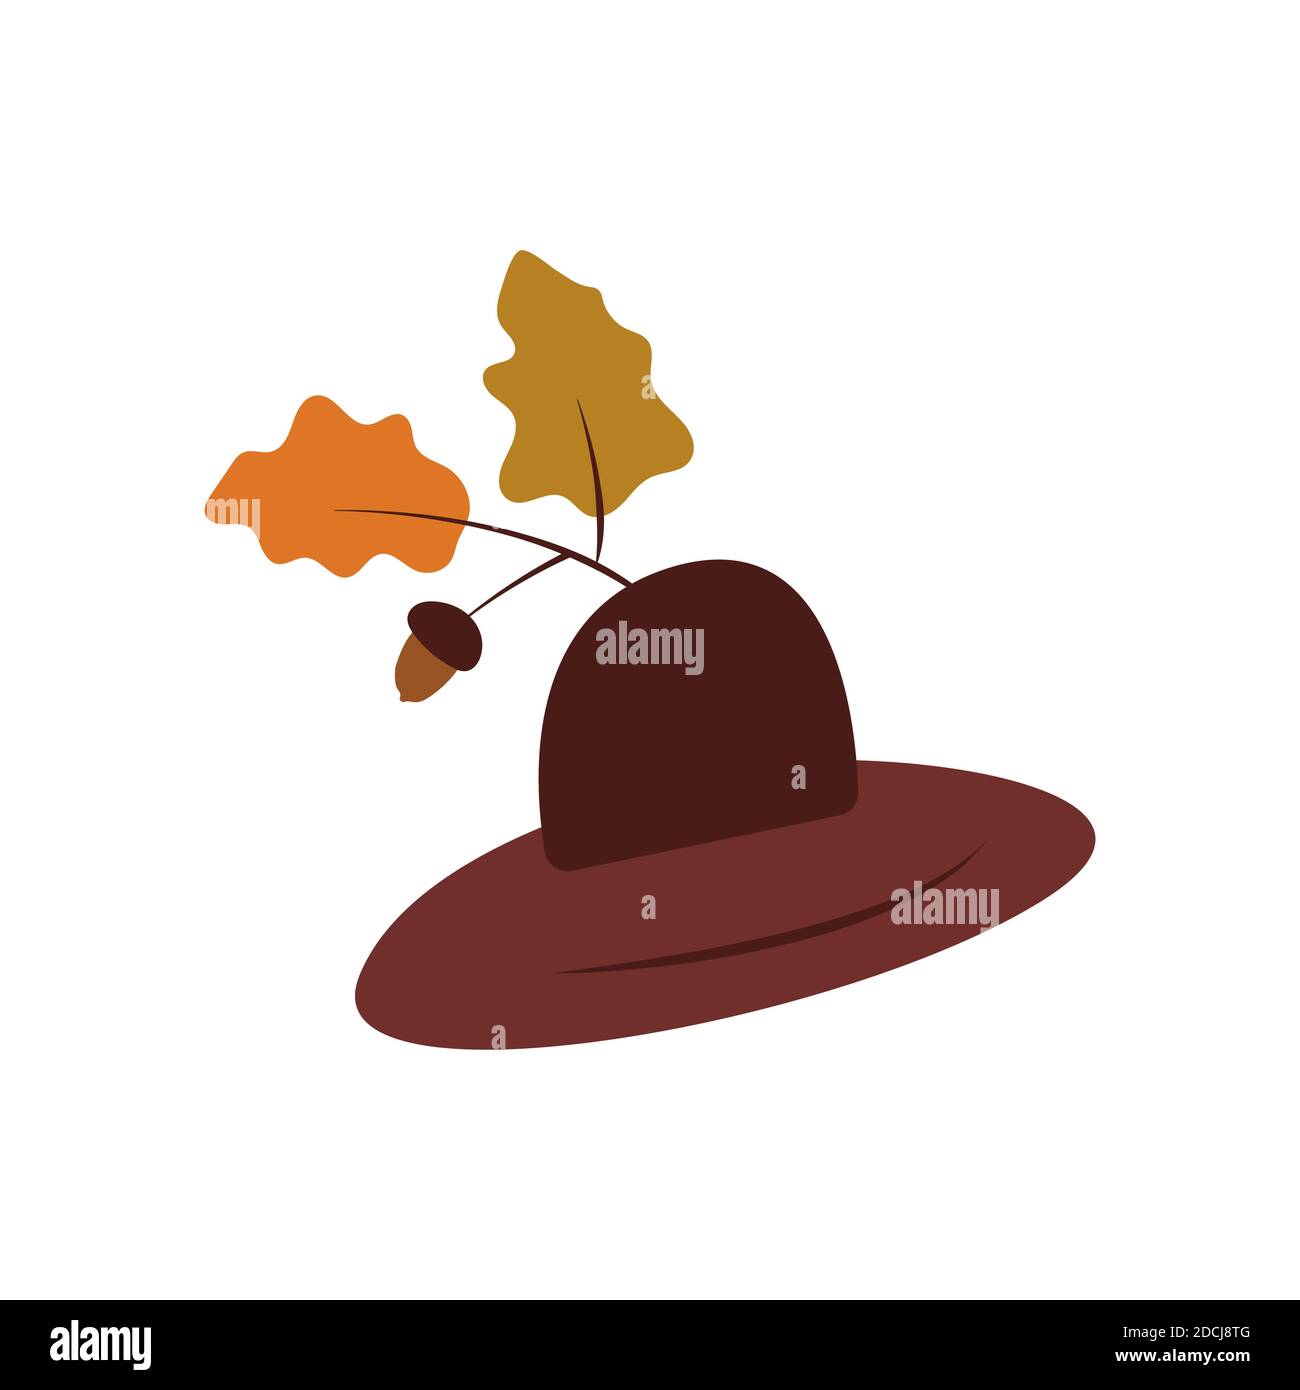 Hut mit Krempe, Herbstblättern und Eichel. Kopfbedeckung zum Schutz. Für einen Spaziergang im Wald. Förster Hut. Bunte Vektorgrafik auf weißem Hintergrund Stock Vektor